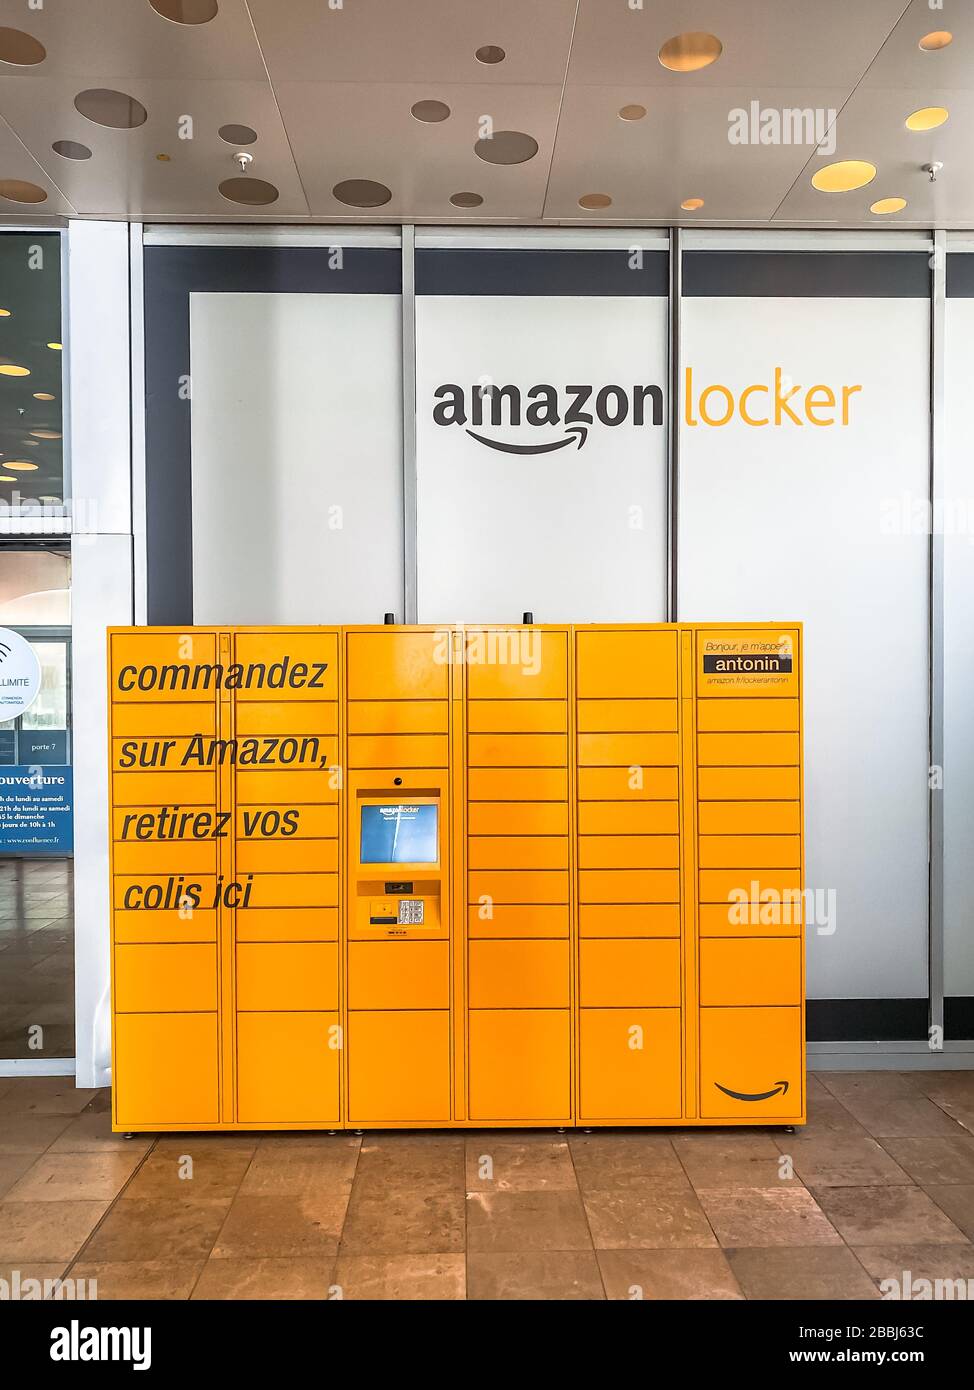 Amazon Locker nel centro commerciale, punto di prelievo arancione per gli  ordini di posta con il logo del marchio Amazon su di esso. Fotografia  mobile. Lione, Francia - 23 febbraio Foto stock - Alamy